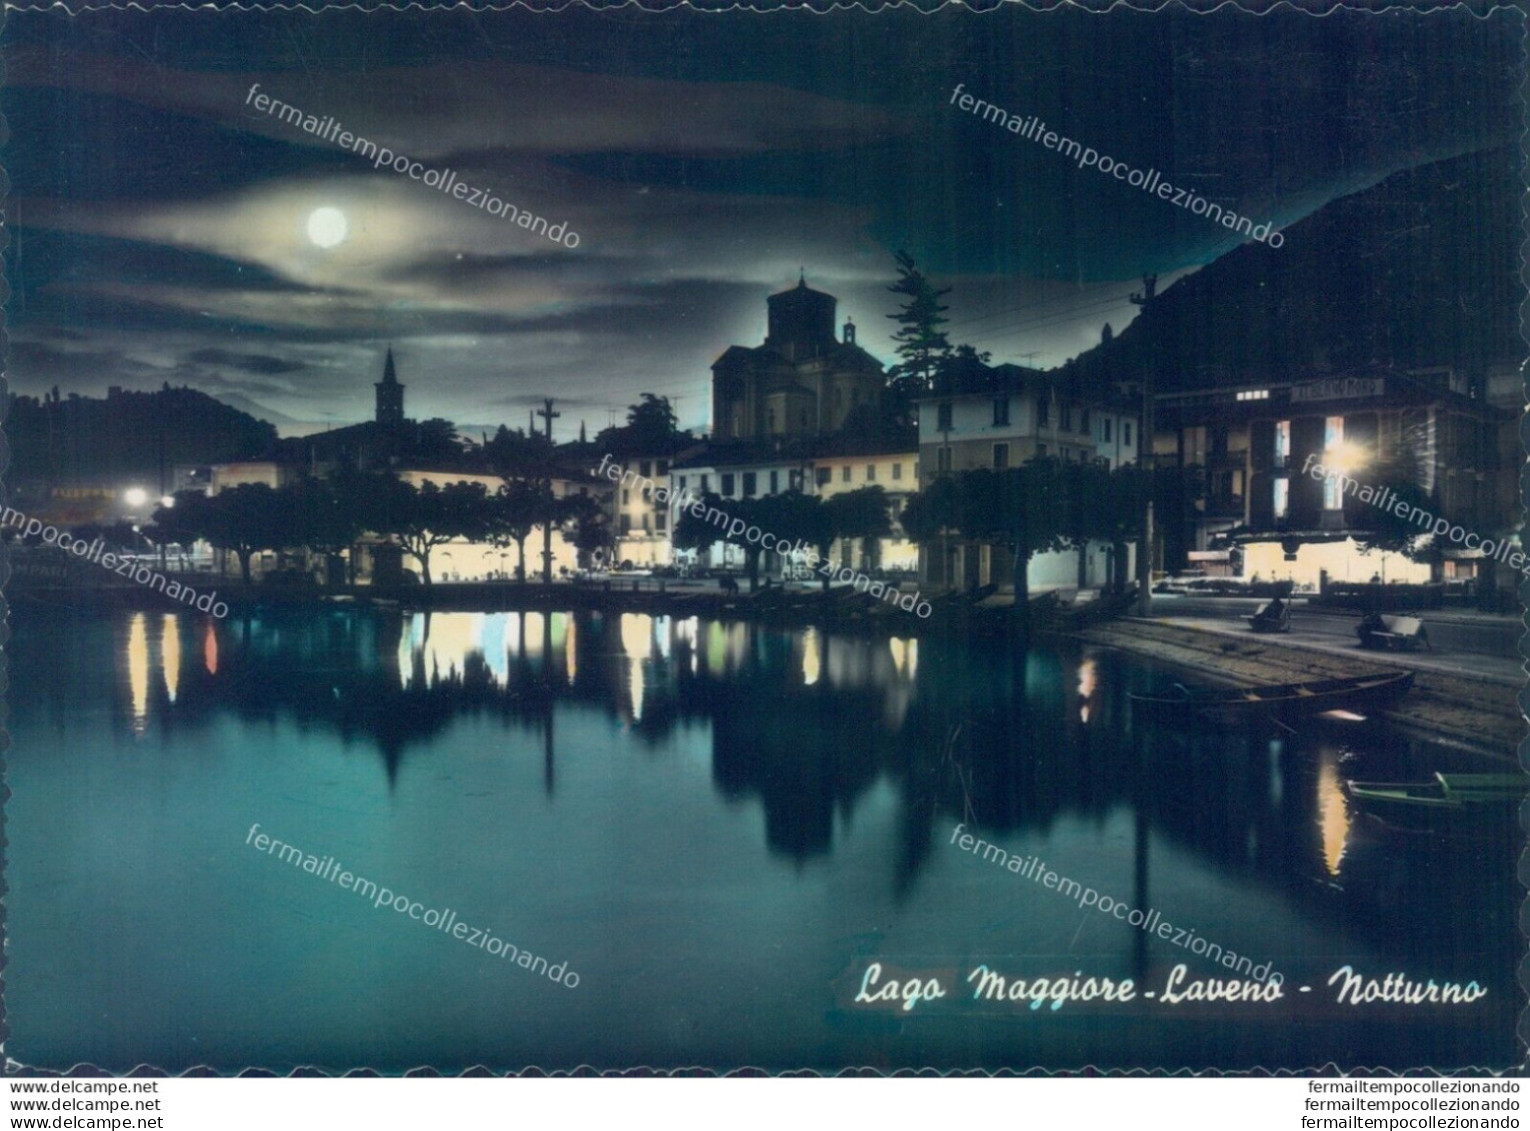 C381 Cartolina Provincia Di  Varese - Lago Maggiore Laveno Notturno - Varese